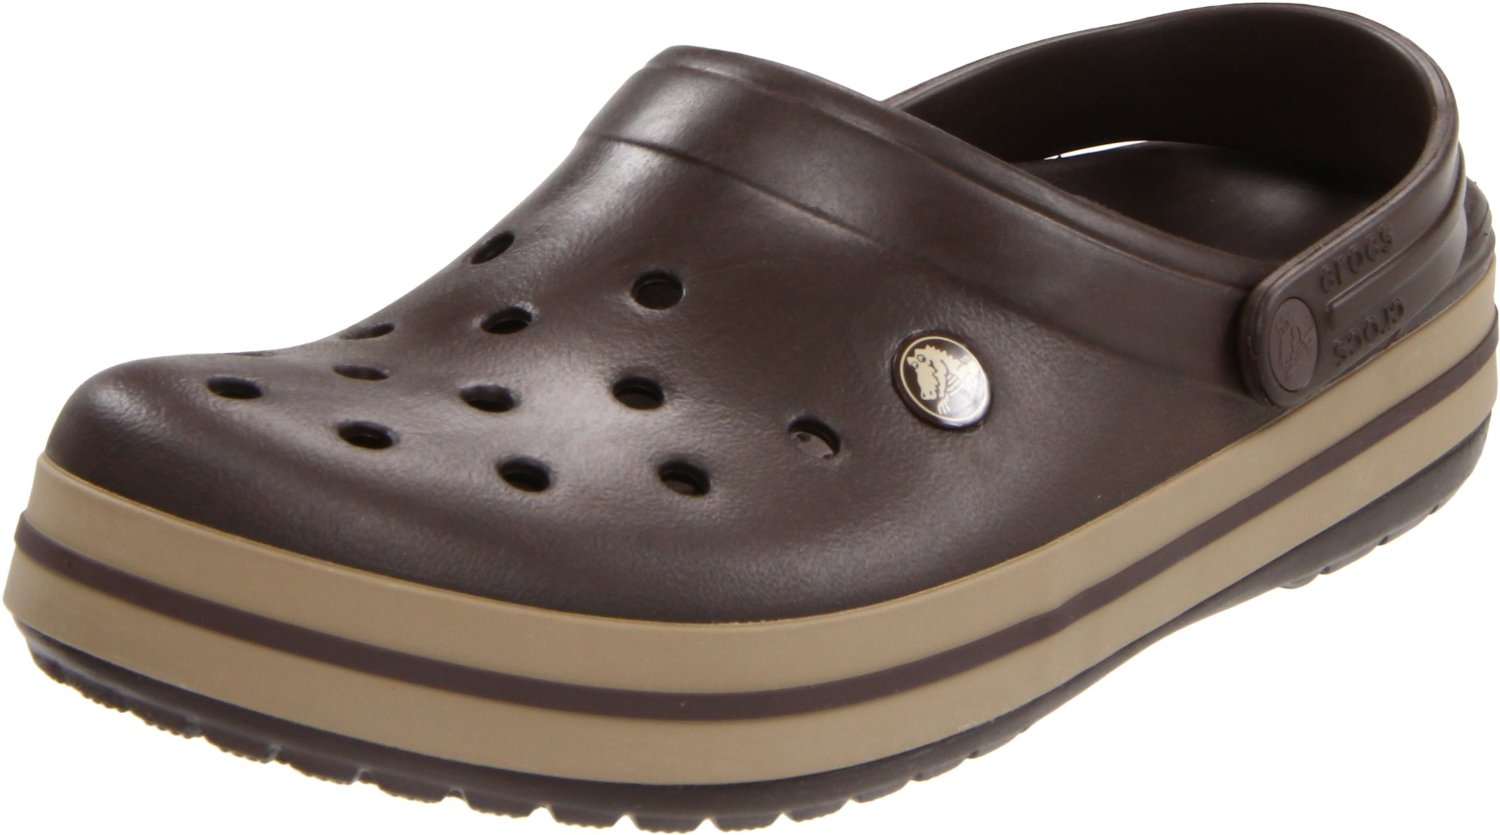  Crocs  Shoes  July 2012